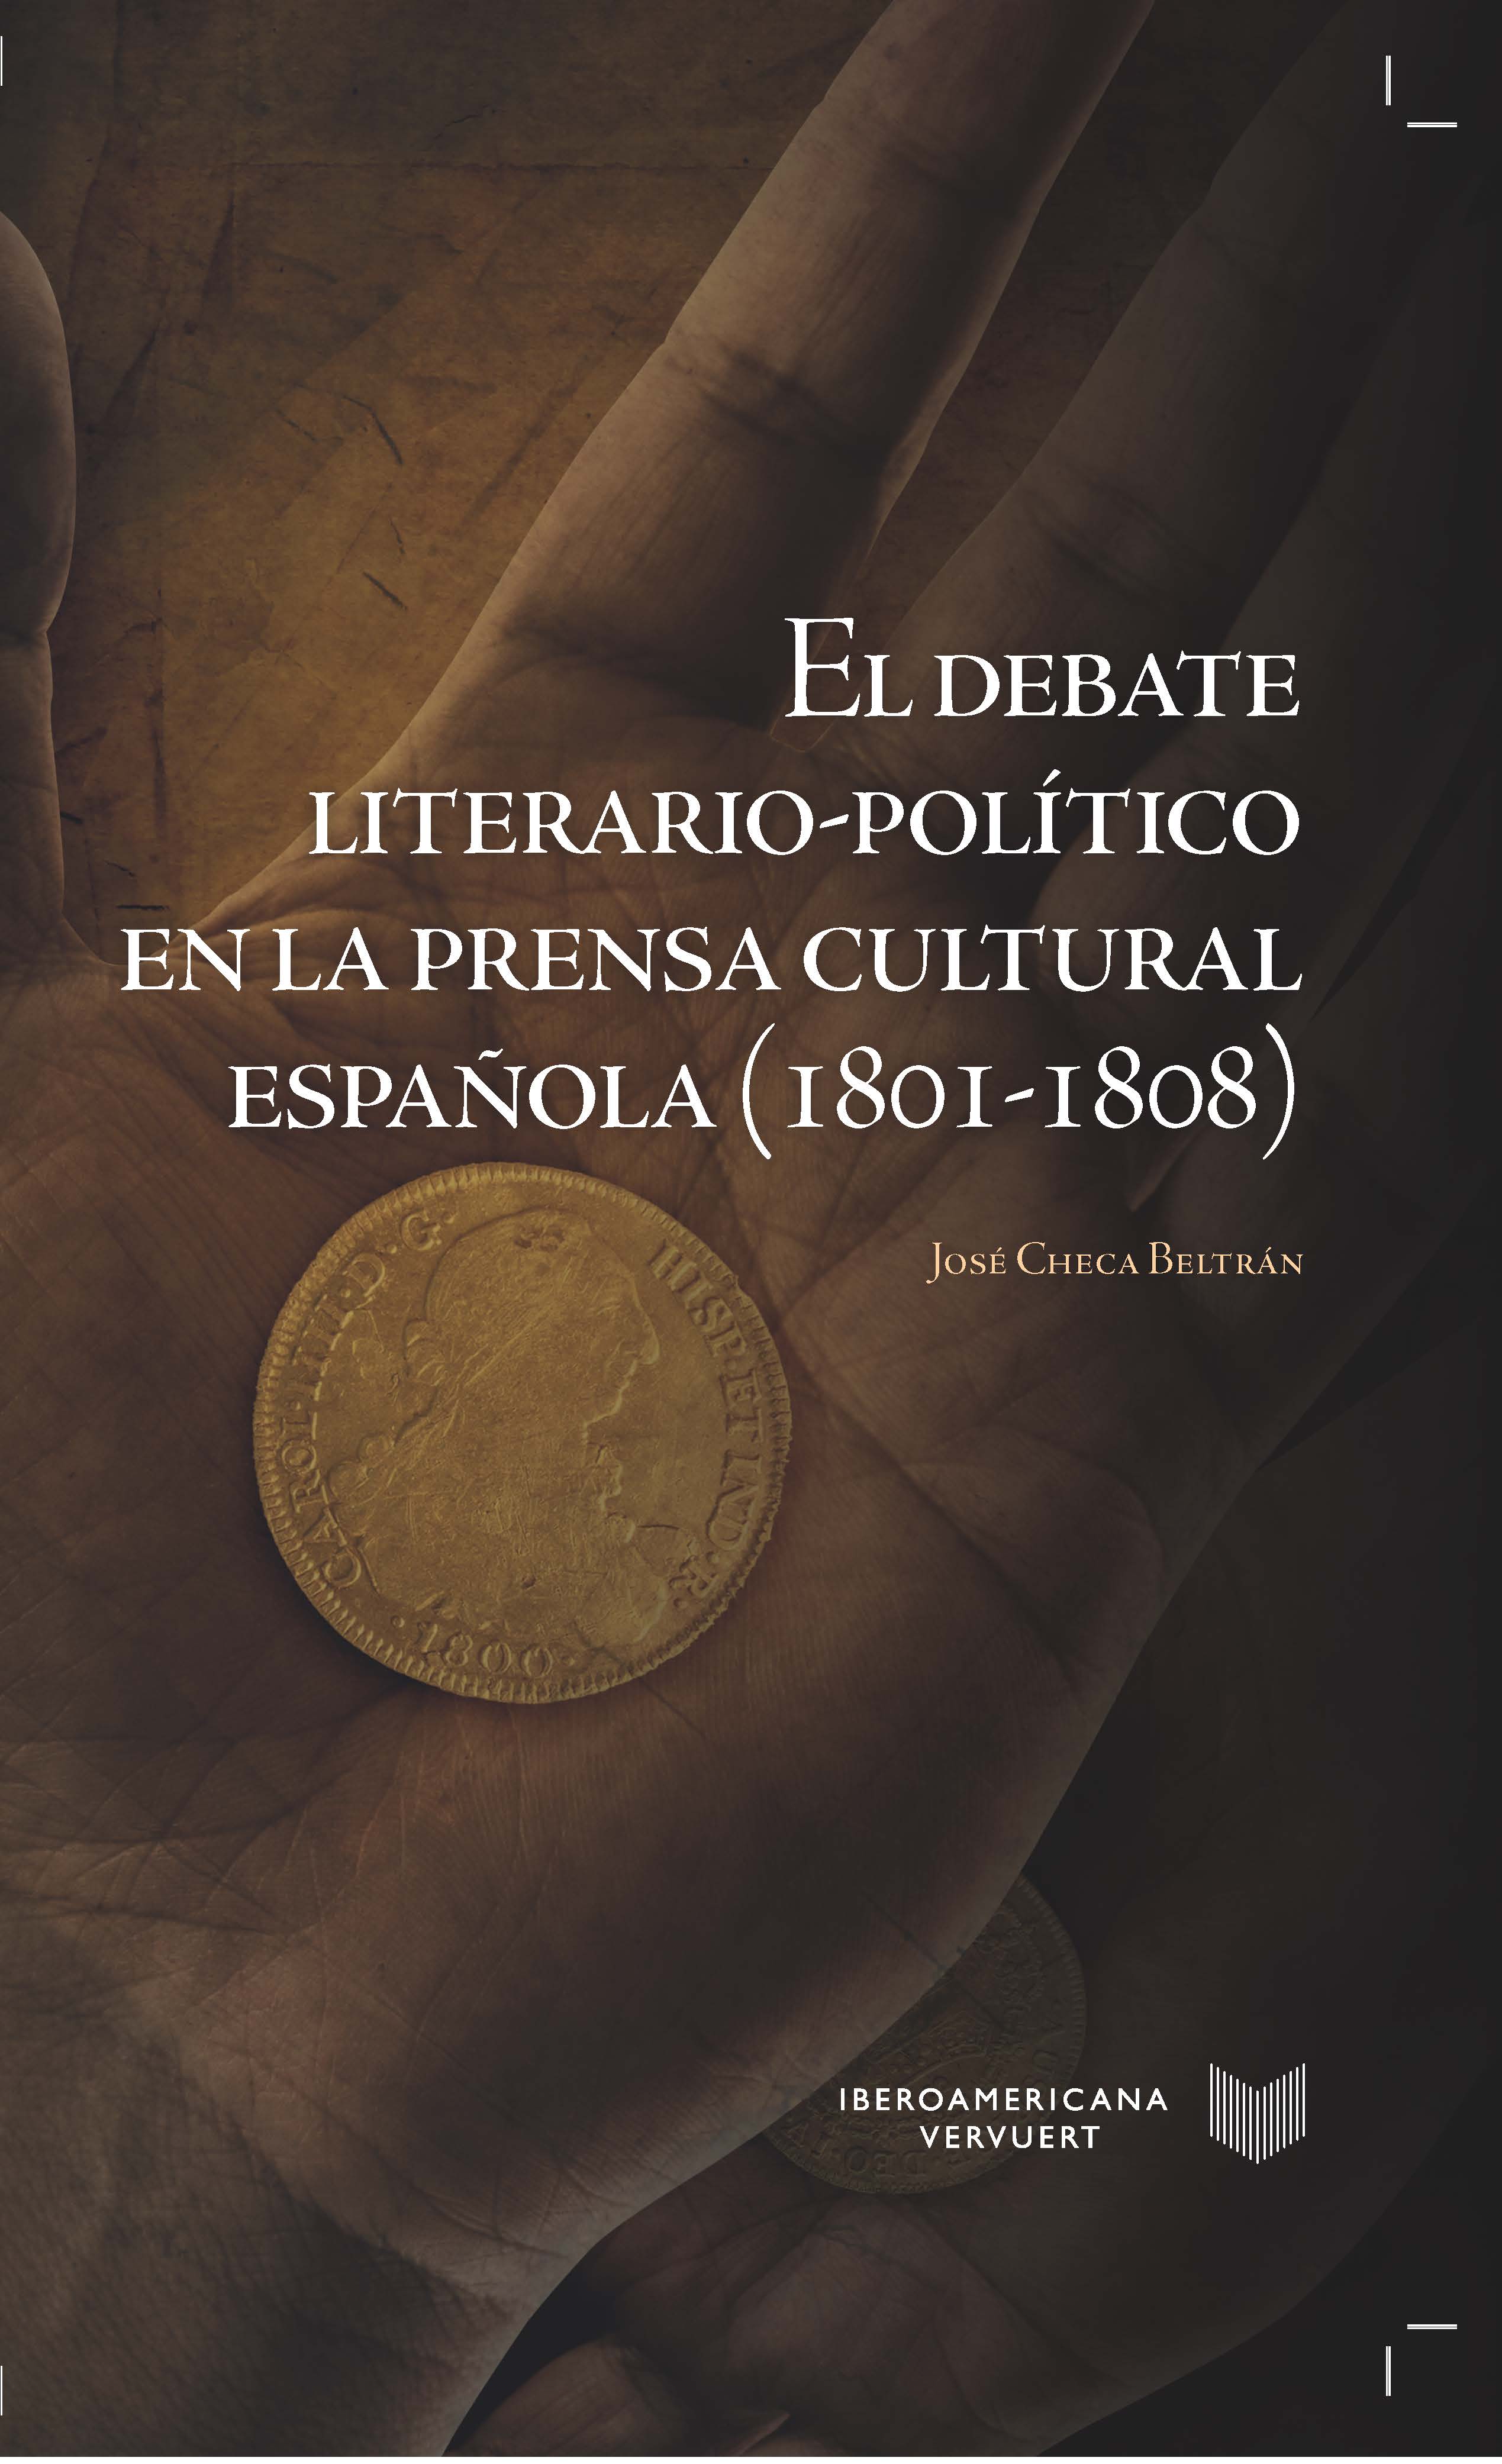 El debate literario-político en la prensa cultural española 